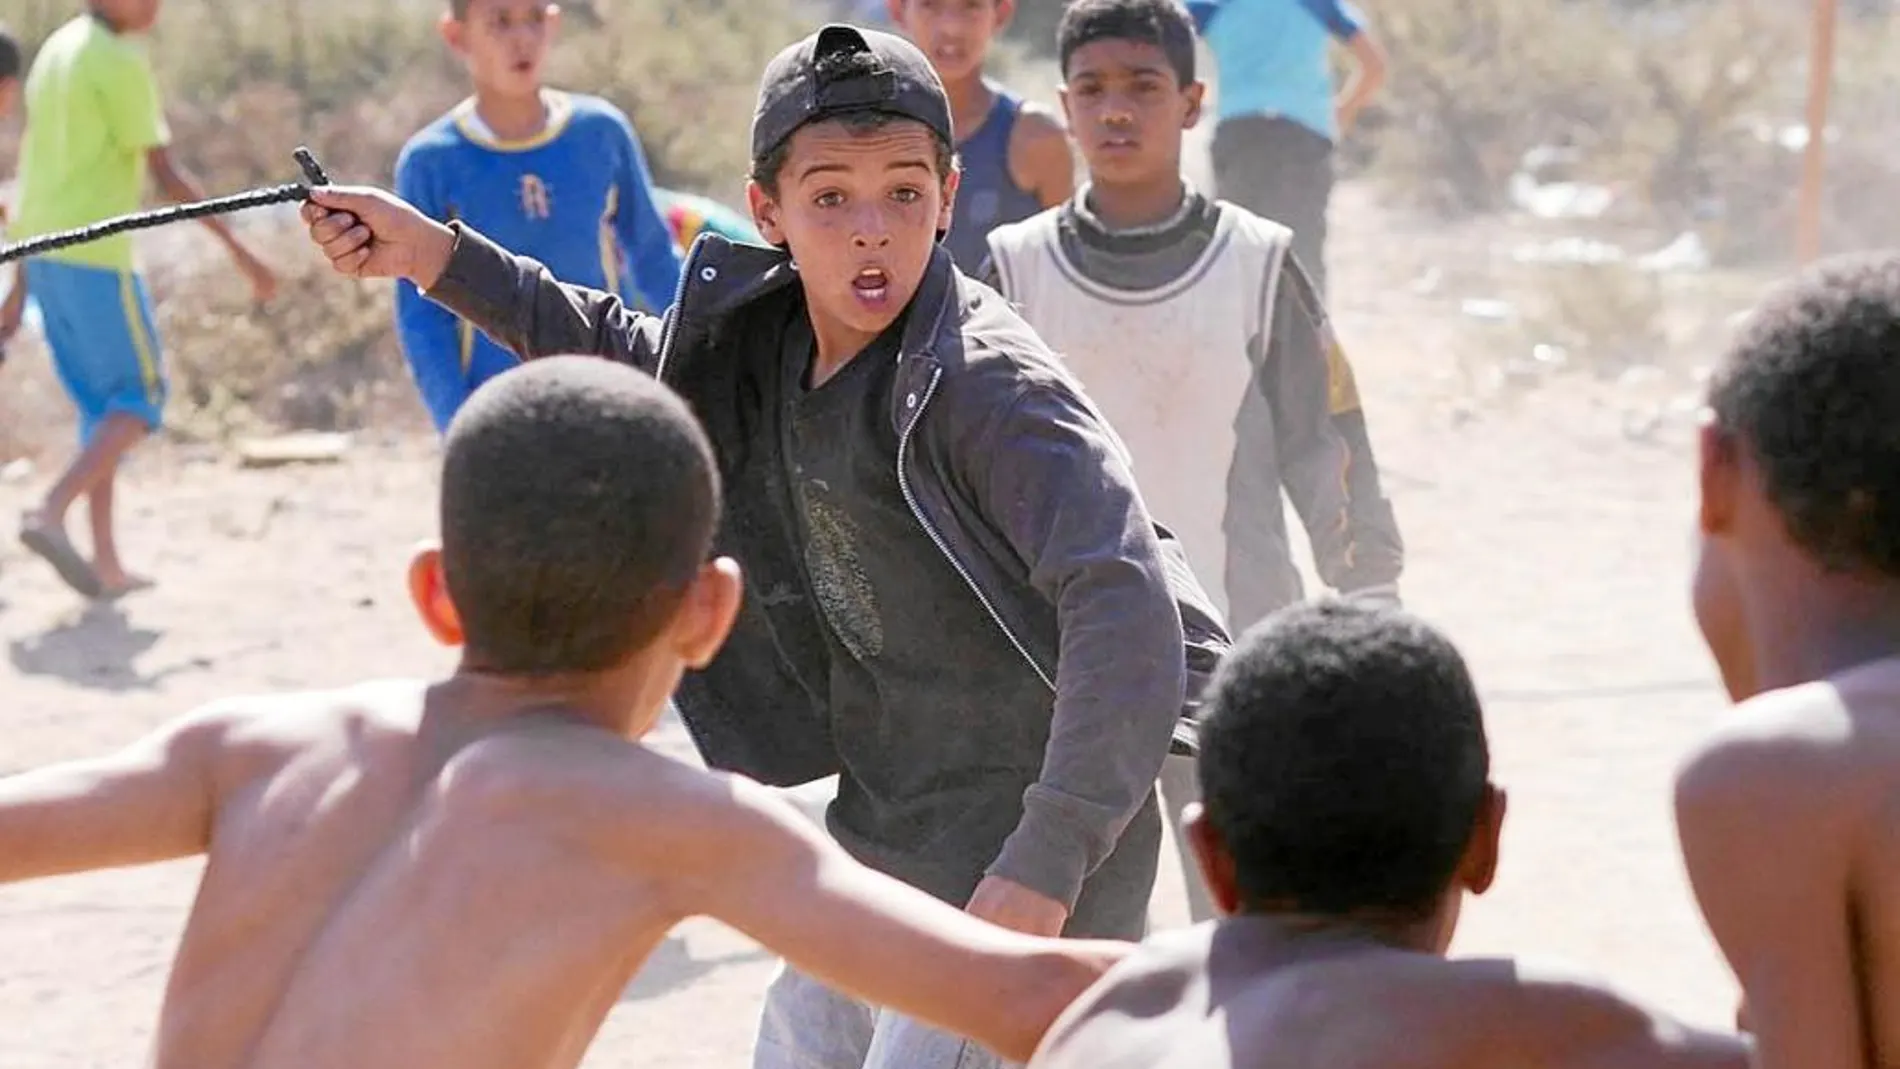 Hamid defiende a su hermano Yachine de otros niños del poblado cuando se forma una trifulca mientras disputan un partido de fútbol.